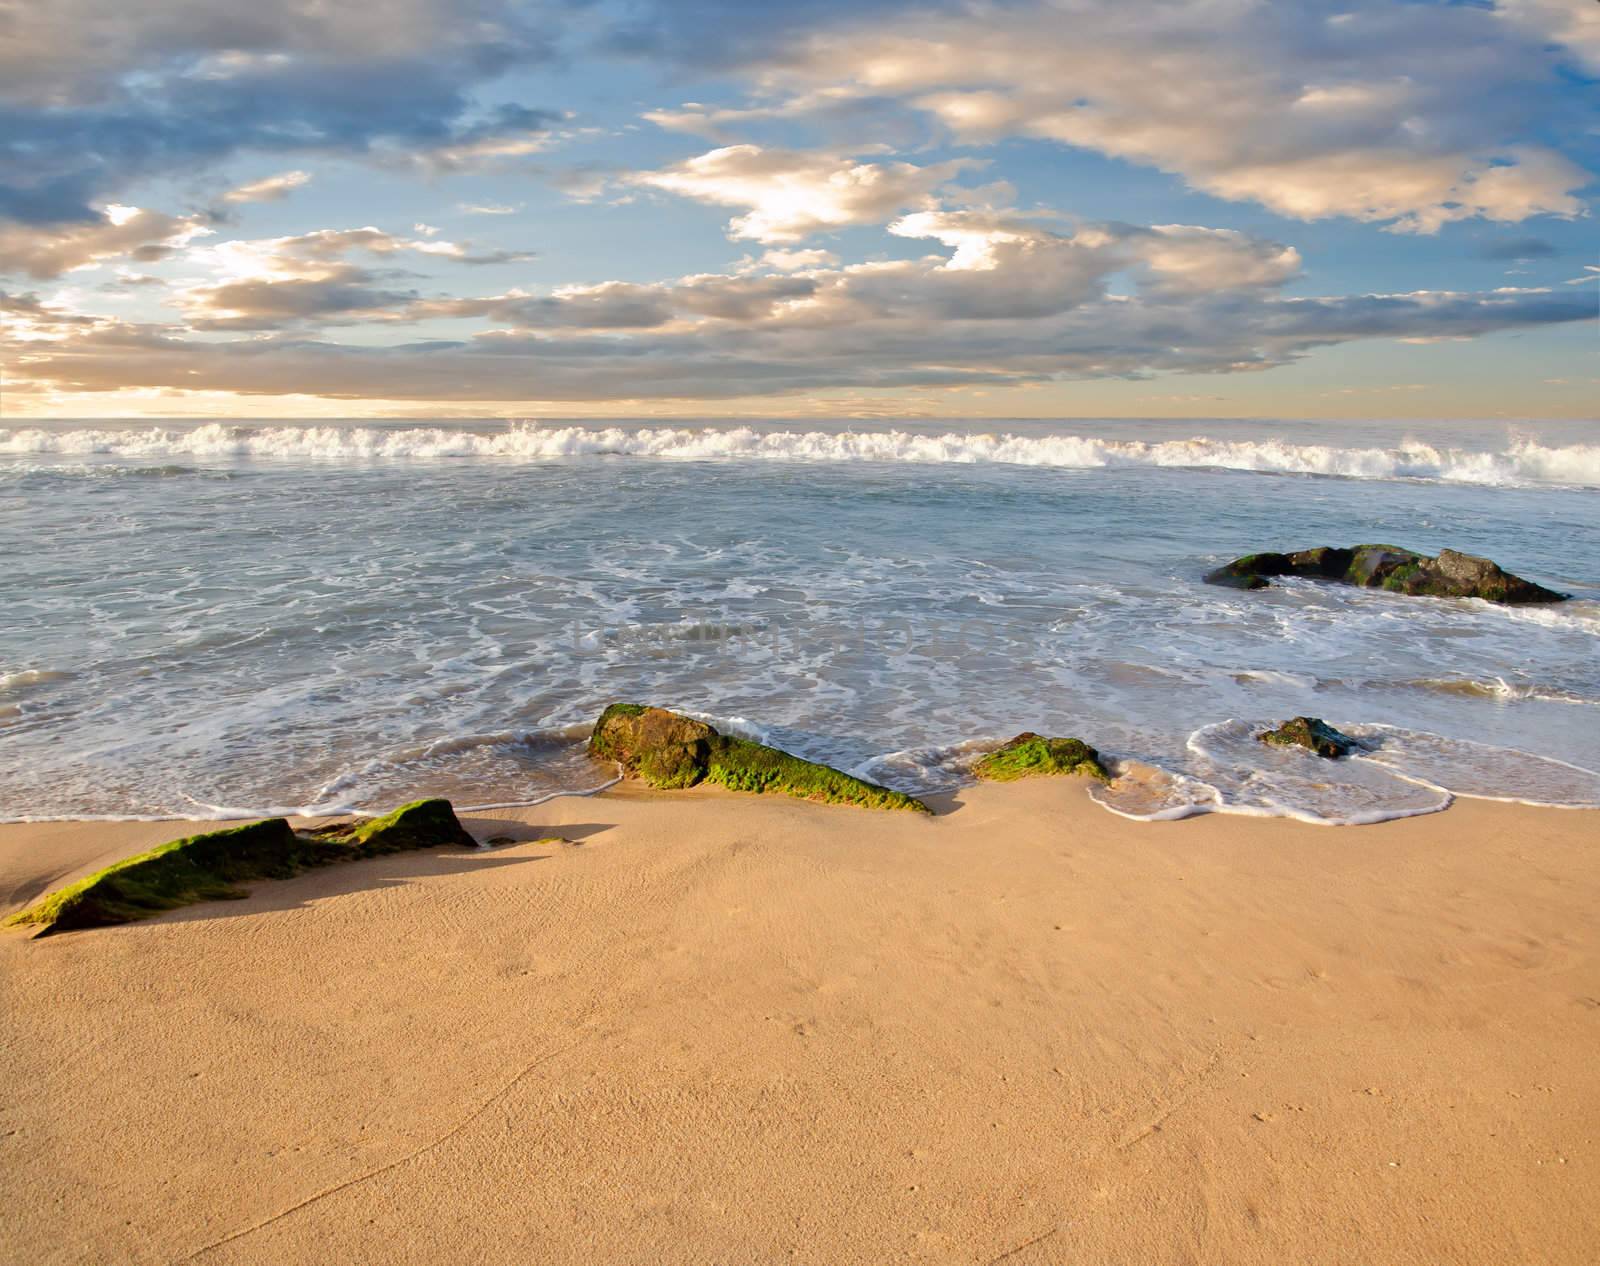 stones in the waves on ocean coast by Sergieiev